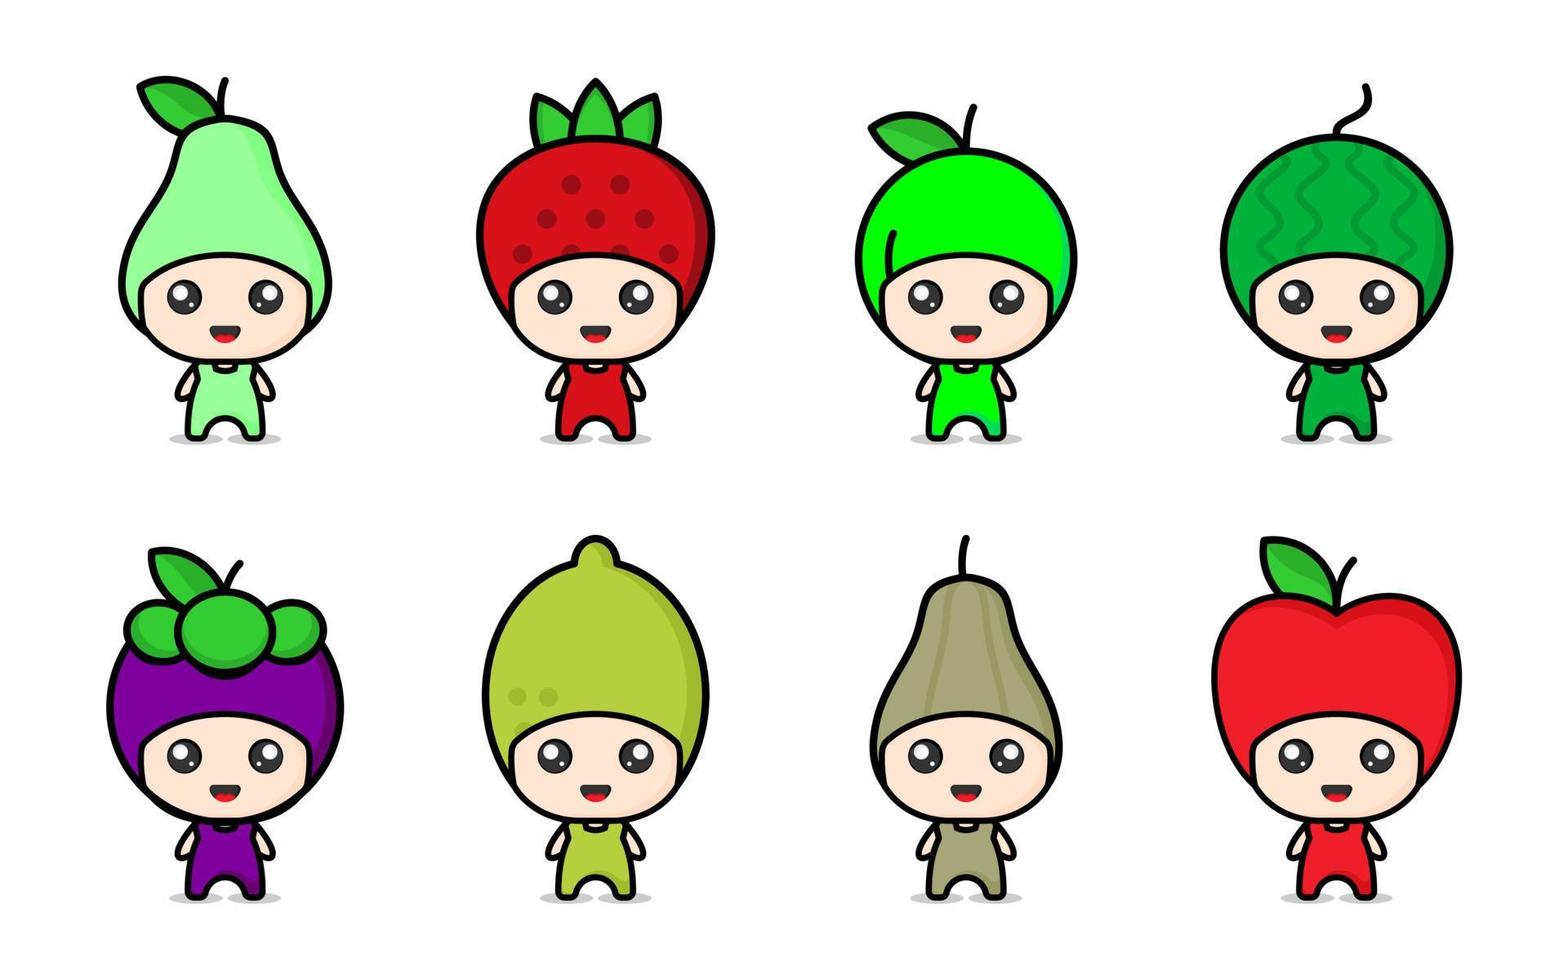 ícone de personagem fofo de frutas coloridas vetor